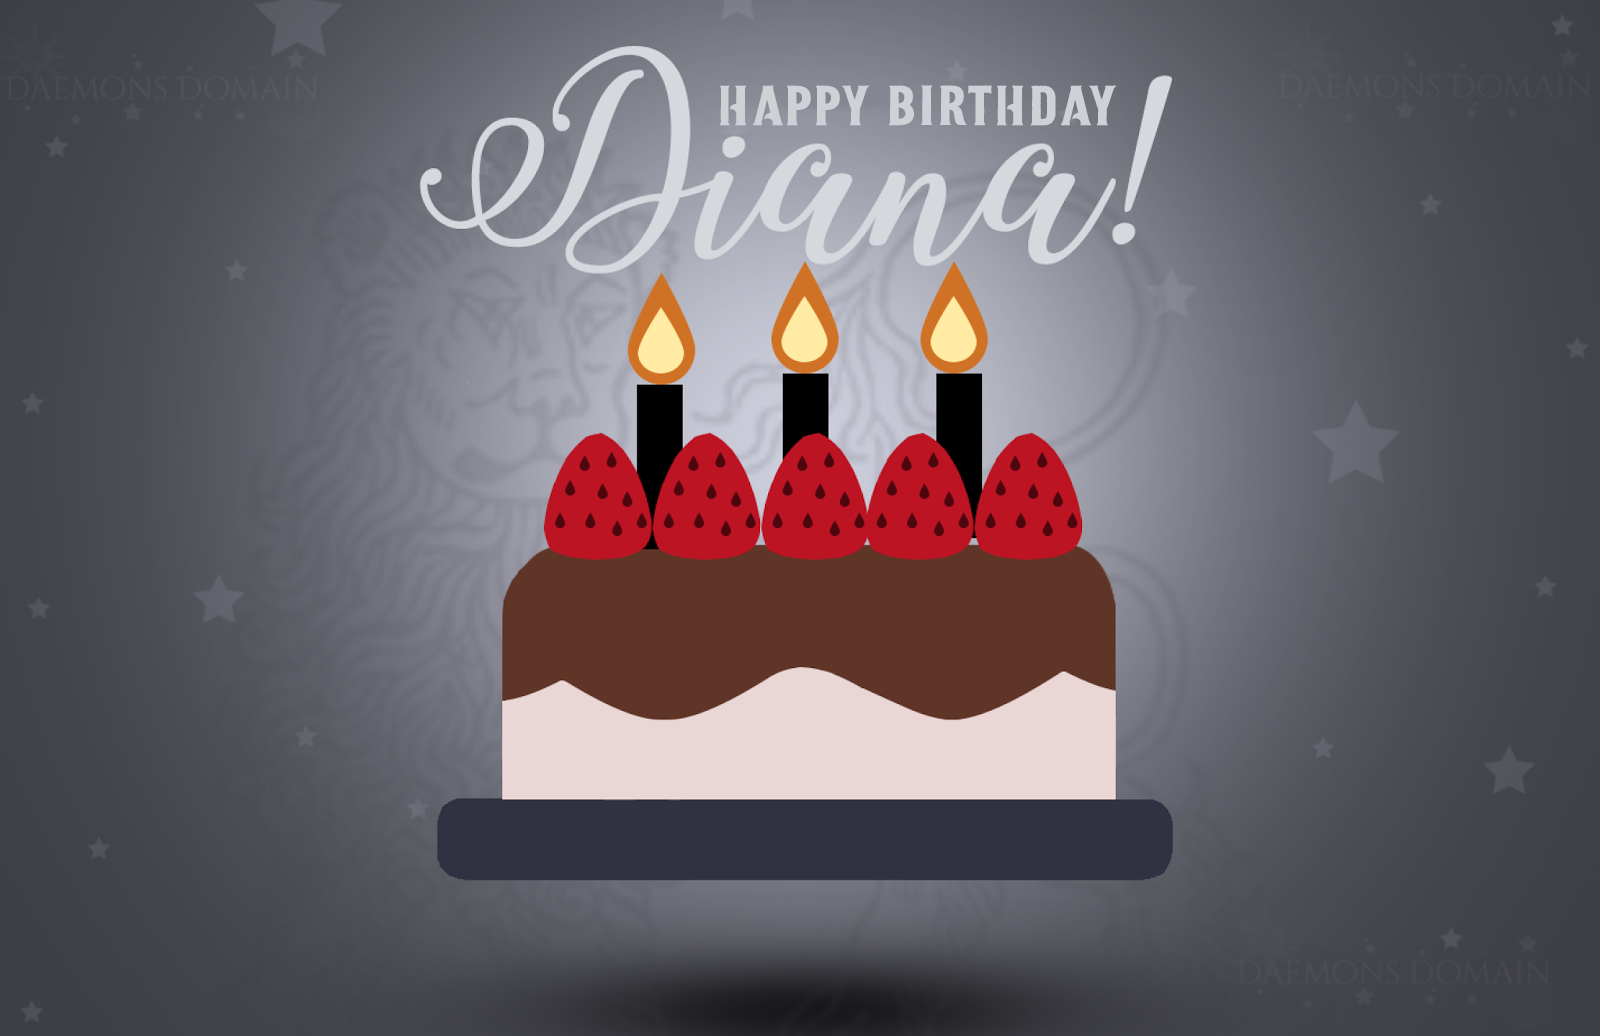 Happy Birthday, Diana! 